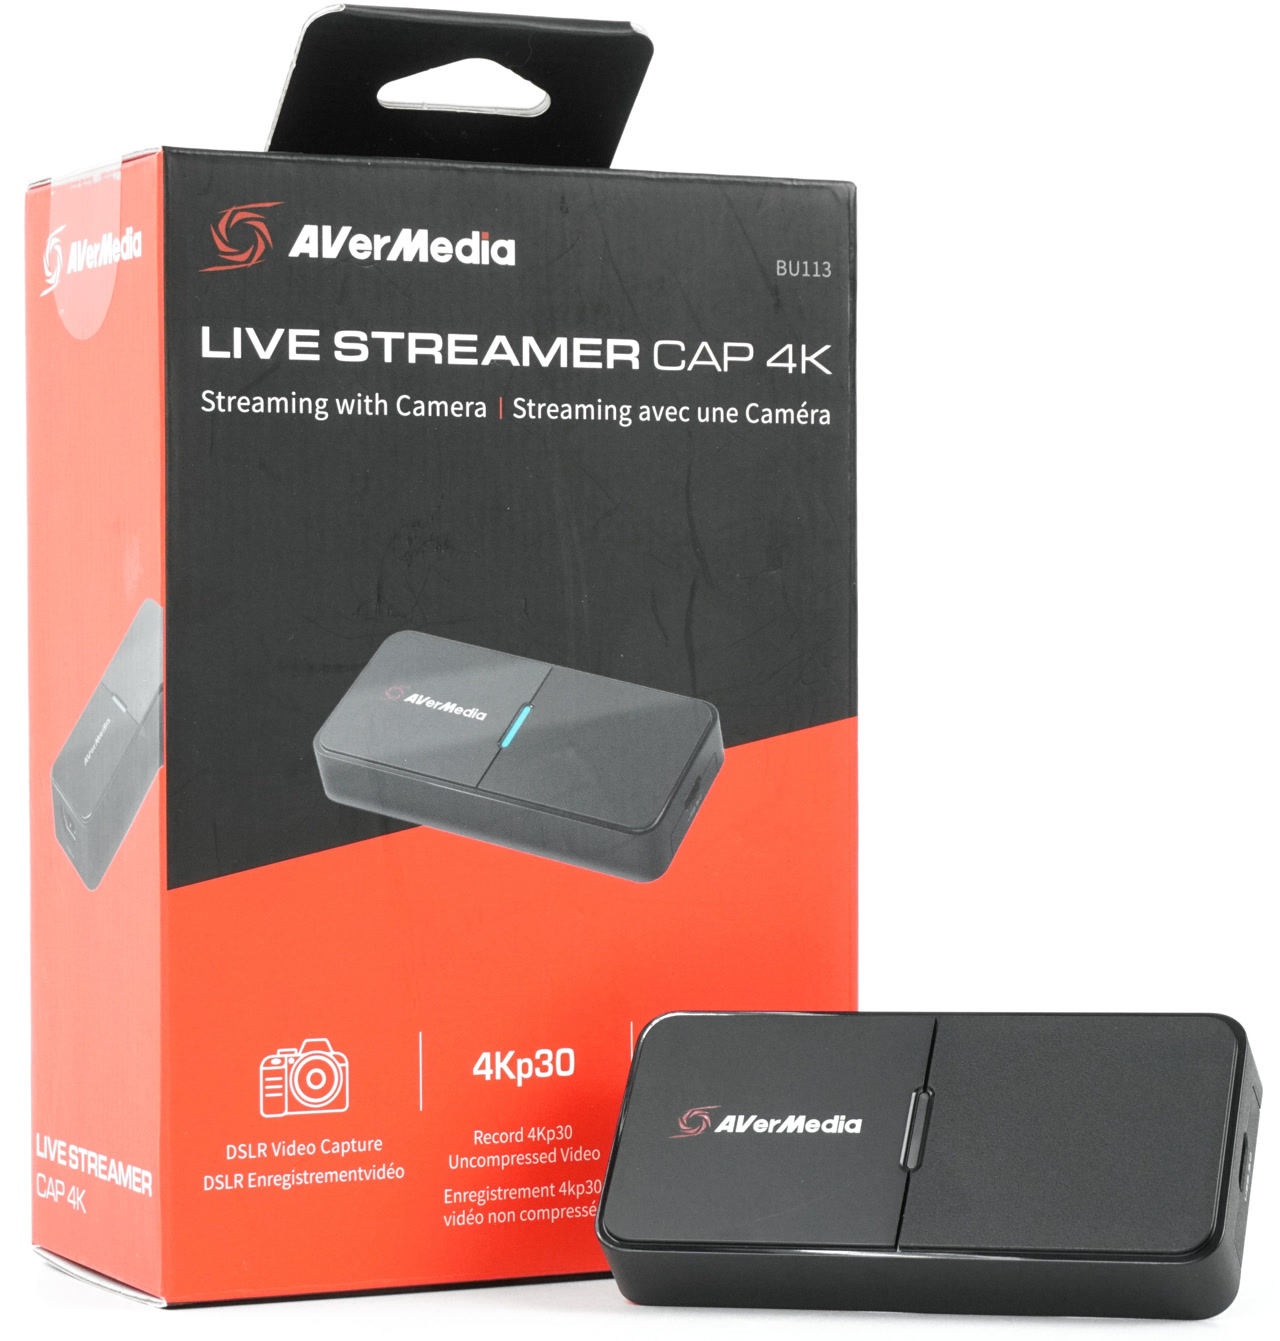 AVerMedia Live Streamer CAP 4K